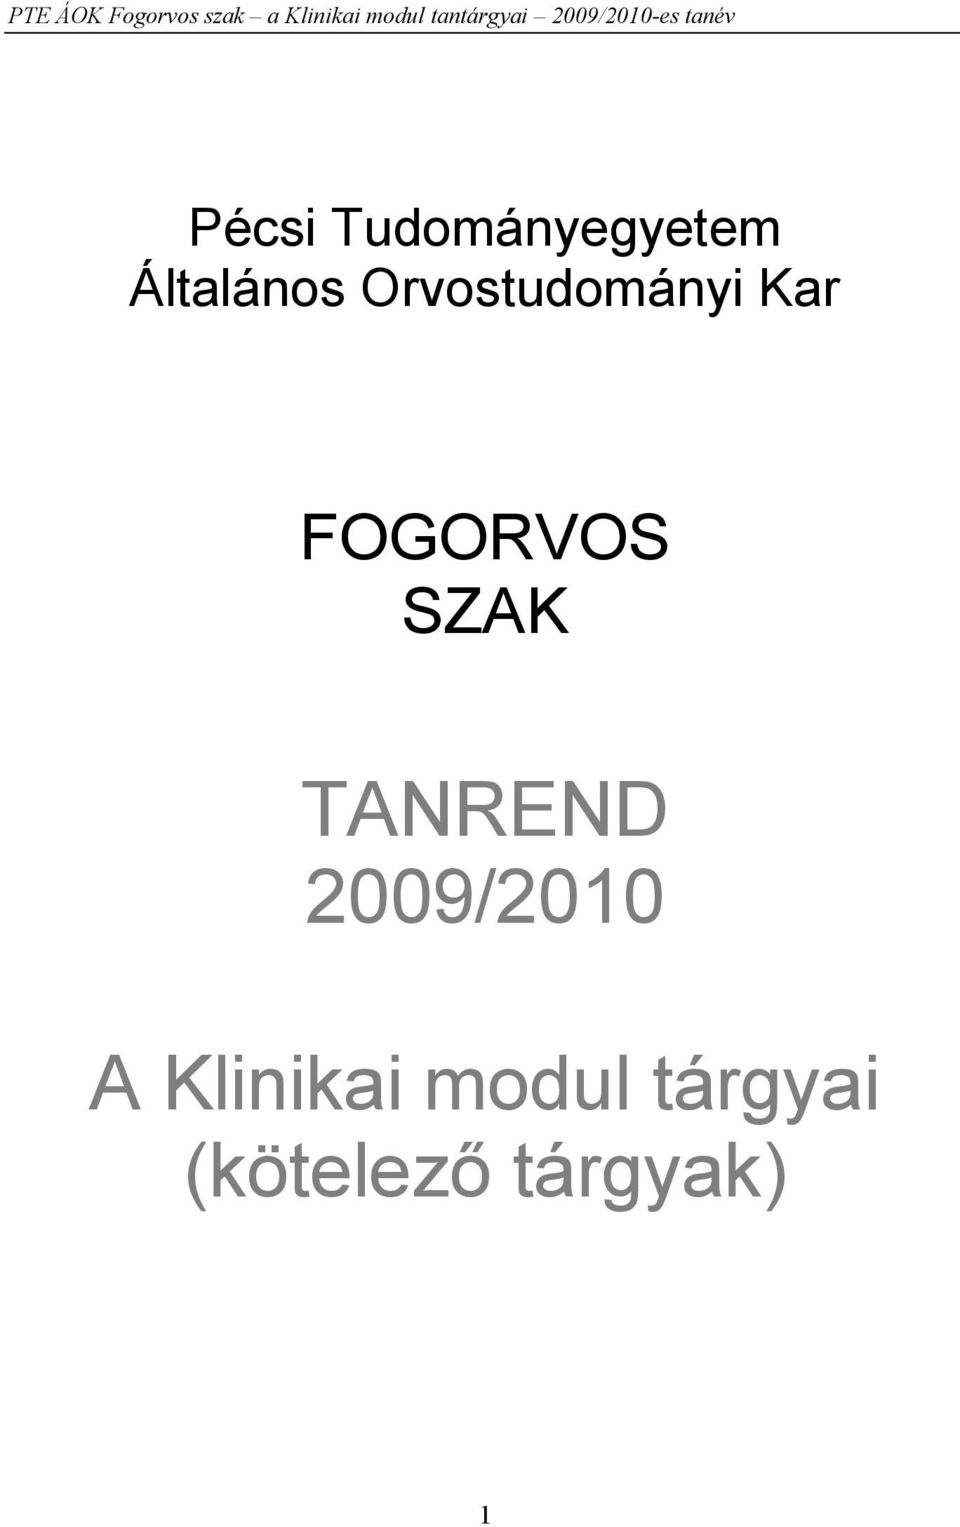 SZAK TANREND 2009/2010 A